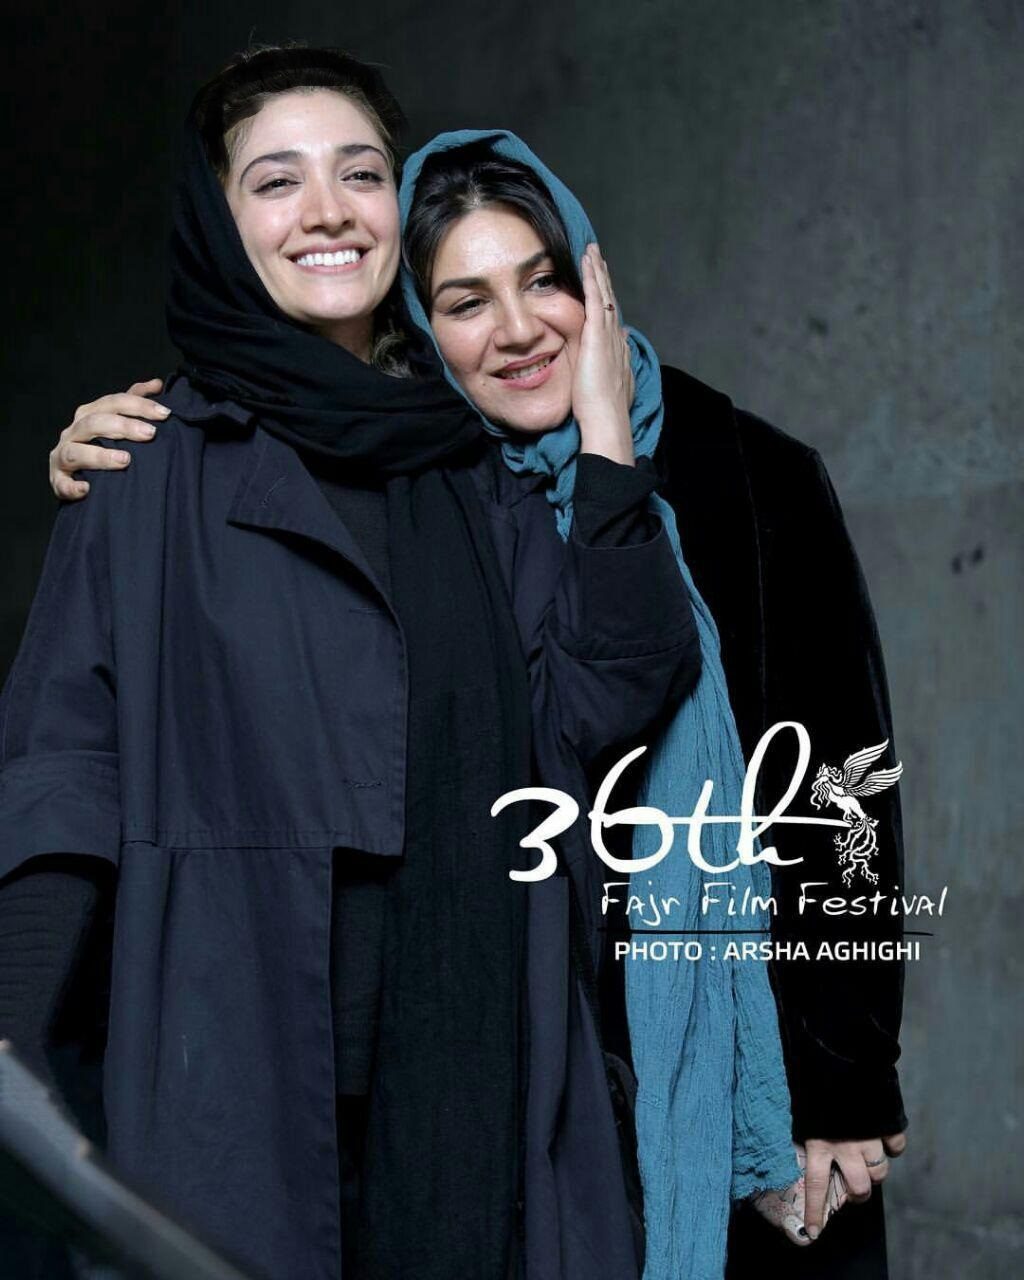 تصویر) ستاره اسکندری و مینا ساداتی در جشنواره